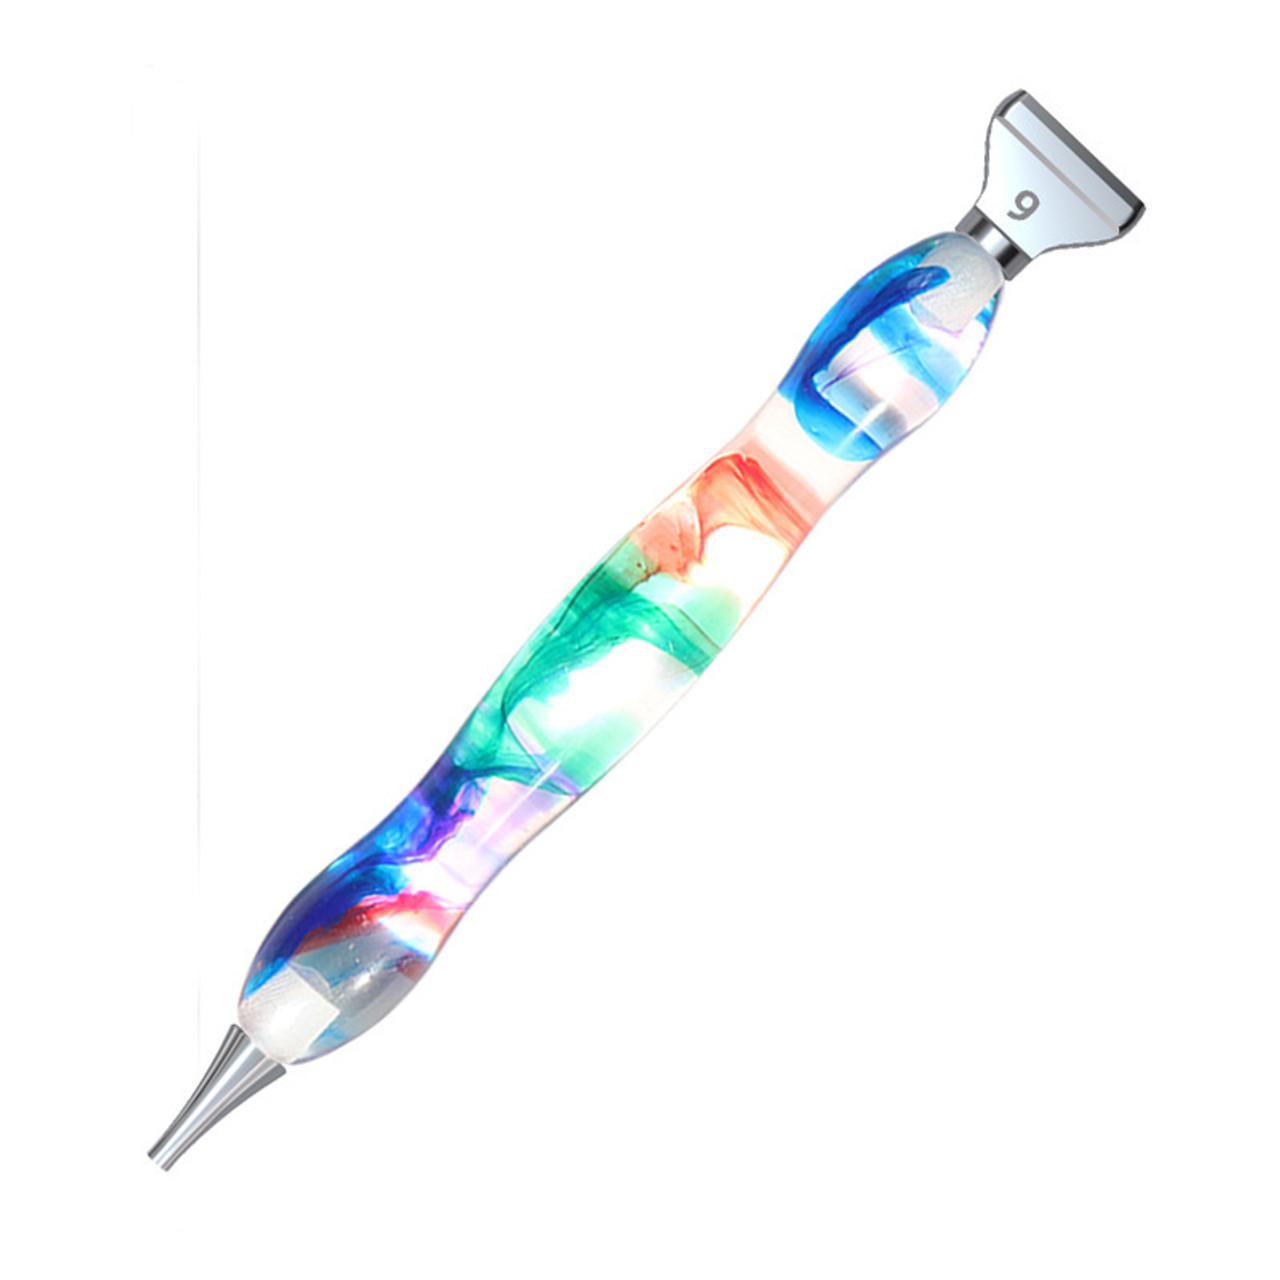 Rainbow Twist Diamond Painting Pen